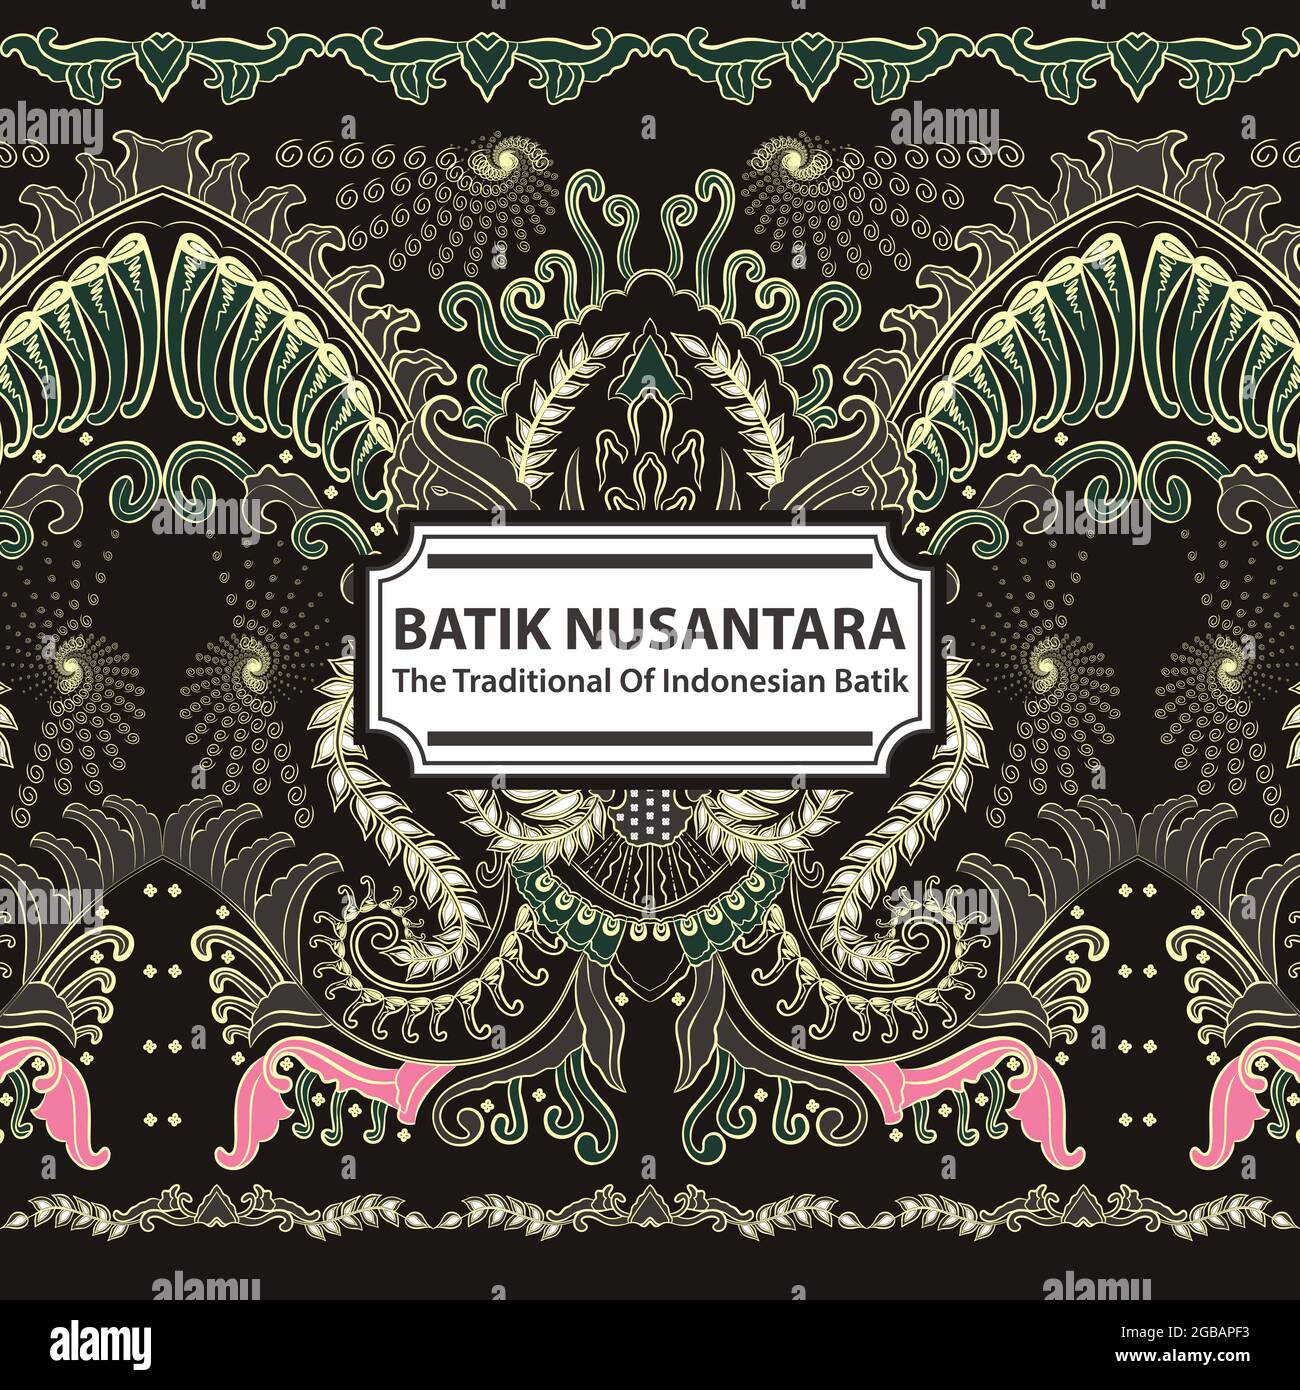 Batik Nusantara - The Traditional Of Indonesian Batik Stock Vector